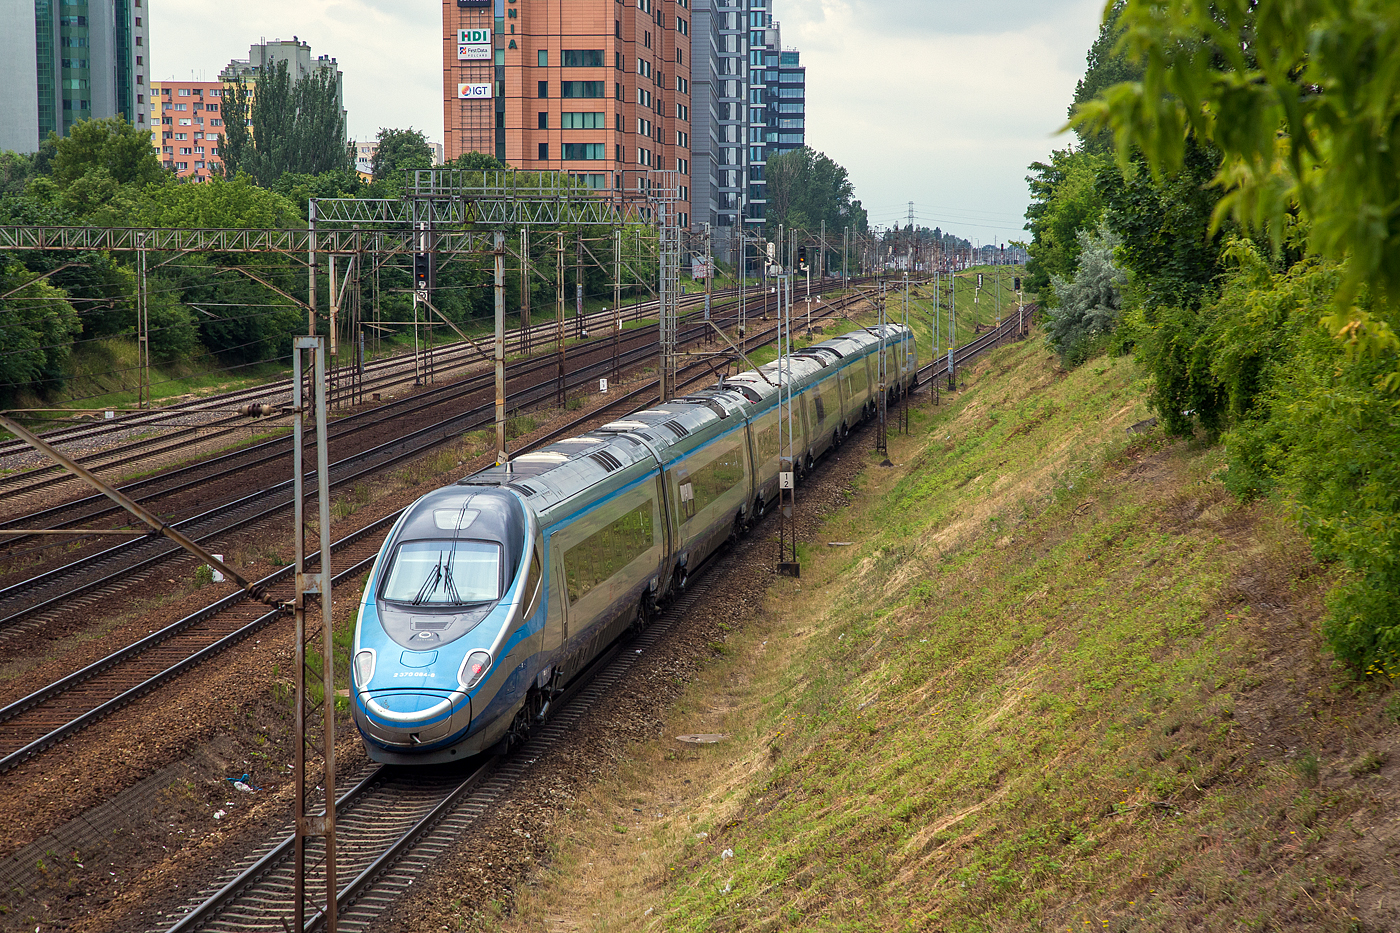 Ein Pinocchio  bzw. Astoro (Habicht) in Polen, so ist auch ein Hauch von Italien und der Schweiz in Polen, aber ohne Neigetechnik.....
Der Alstom ED 250-012 (2 370 084-8) ED250-012 der PKP Intercity (PKPIC) verlässt am 26 Juni 2017 als EIP (Express InterCity Premium) Warszawa (Warschau) und fährt Richtung Westen.

Die siebenteiligen Hochgeschwindigkeitszüge ohne Neigetechnik der Baureihe ED 250 gehören zur Alstom Produktfamilie Pendolino, sie erreichen eine Höchstgeschwindigkeit von 250 km/h und sind seit dem 14. Dezember 2014 als Express InterCity Premium planmäßig in Polen unterwegs. Der Express InterCity Premium (EIP) ist die höchste polnische Zuggattung.

Aber, auch wenn die siebenteiligen ED 250-Triebzüge zur Produktfamilie Pendolino (ähnlich ETR 600 und ETR 610) gehören, so wurde nicht die namensgebende Neigetechnik verbaut, da das Einsatzprofil der Züge in Polen keine signifikanten Vorteile durch Neigetechnik erfahren hätte. 

Ein ED 250-Triebzug besteht aus sieben Wagen, die von acht wassergekühlten Drehstrom-Asynchronmotoren mit einer Leistung von je 708 kW angetrieben werden. Der Wagenkasten wurde aus Aluminium gefertigt, als Zugsicherung sind verschiedene Systeme an Bord.

Die modernen elektrischen Triebzüge werden aktuell nur innerhalb Polens eingesetzt, hierbei wird ETCS Level 1 und 2 sowie SHP verwendet. Der Hersteller Alstom ist jedoch verpflichtet, den Einsatz in Deutschland, Österreich und Tschechien zu ermöglichen, was durch das Vorhandensein von LZB, PZB und Mirel bereits in der Grundkonzeption berücksichtigt wurde. Im Frühjahr 2017 begannen Testfahrten mit dem Ziel die notwendigen EBA-Zulassungen zu bekommen. 

TECHNISCHE DATEN: 
Nummerierung (UIC):  2 370 001–2 370 020 (vorderer Wagen)
Gebaute Anzahl:  20
Spurweite:  1.435 (Normalspur) 
Achsformel: 1A’A1’+1A’A1’+2’2’+2’2’+ 2’2’+1A’A1’+1A’A1’
Länge:  187.400 mm
Höhe:  4.100 mm
Breite:  2.830 mm 
Fußbodenhöhe:  1.260 mm
Radsatzfahrmasse:  17 t
Höchstgeschwindigkeit:  250 km/h
Dauerleistung:  5.664 kW
Stromsystem:  3000 V DC / 15 kV 16,7 Hz AC / 25 kV 50 Hz AC
Anzahl der Fahrmotoren:  8 (Drehstrom-Asynchronmotoren)
Kupplungstyp:  Scharfenbergkupplung
Sitzplätze: 402 (45 in der ersten und 357 in der zweiten Klasse)